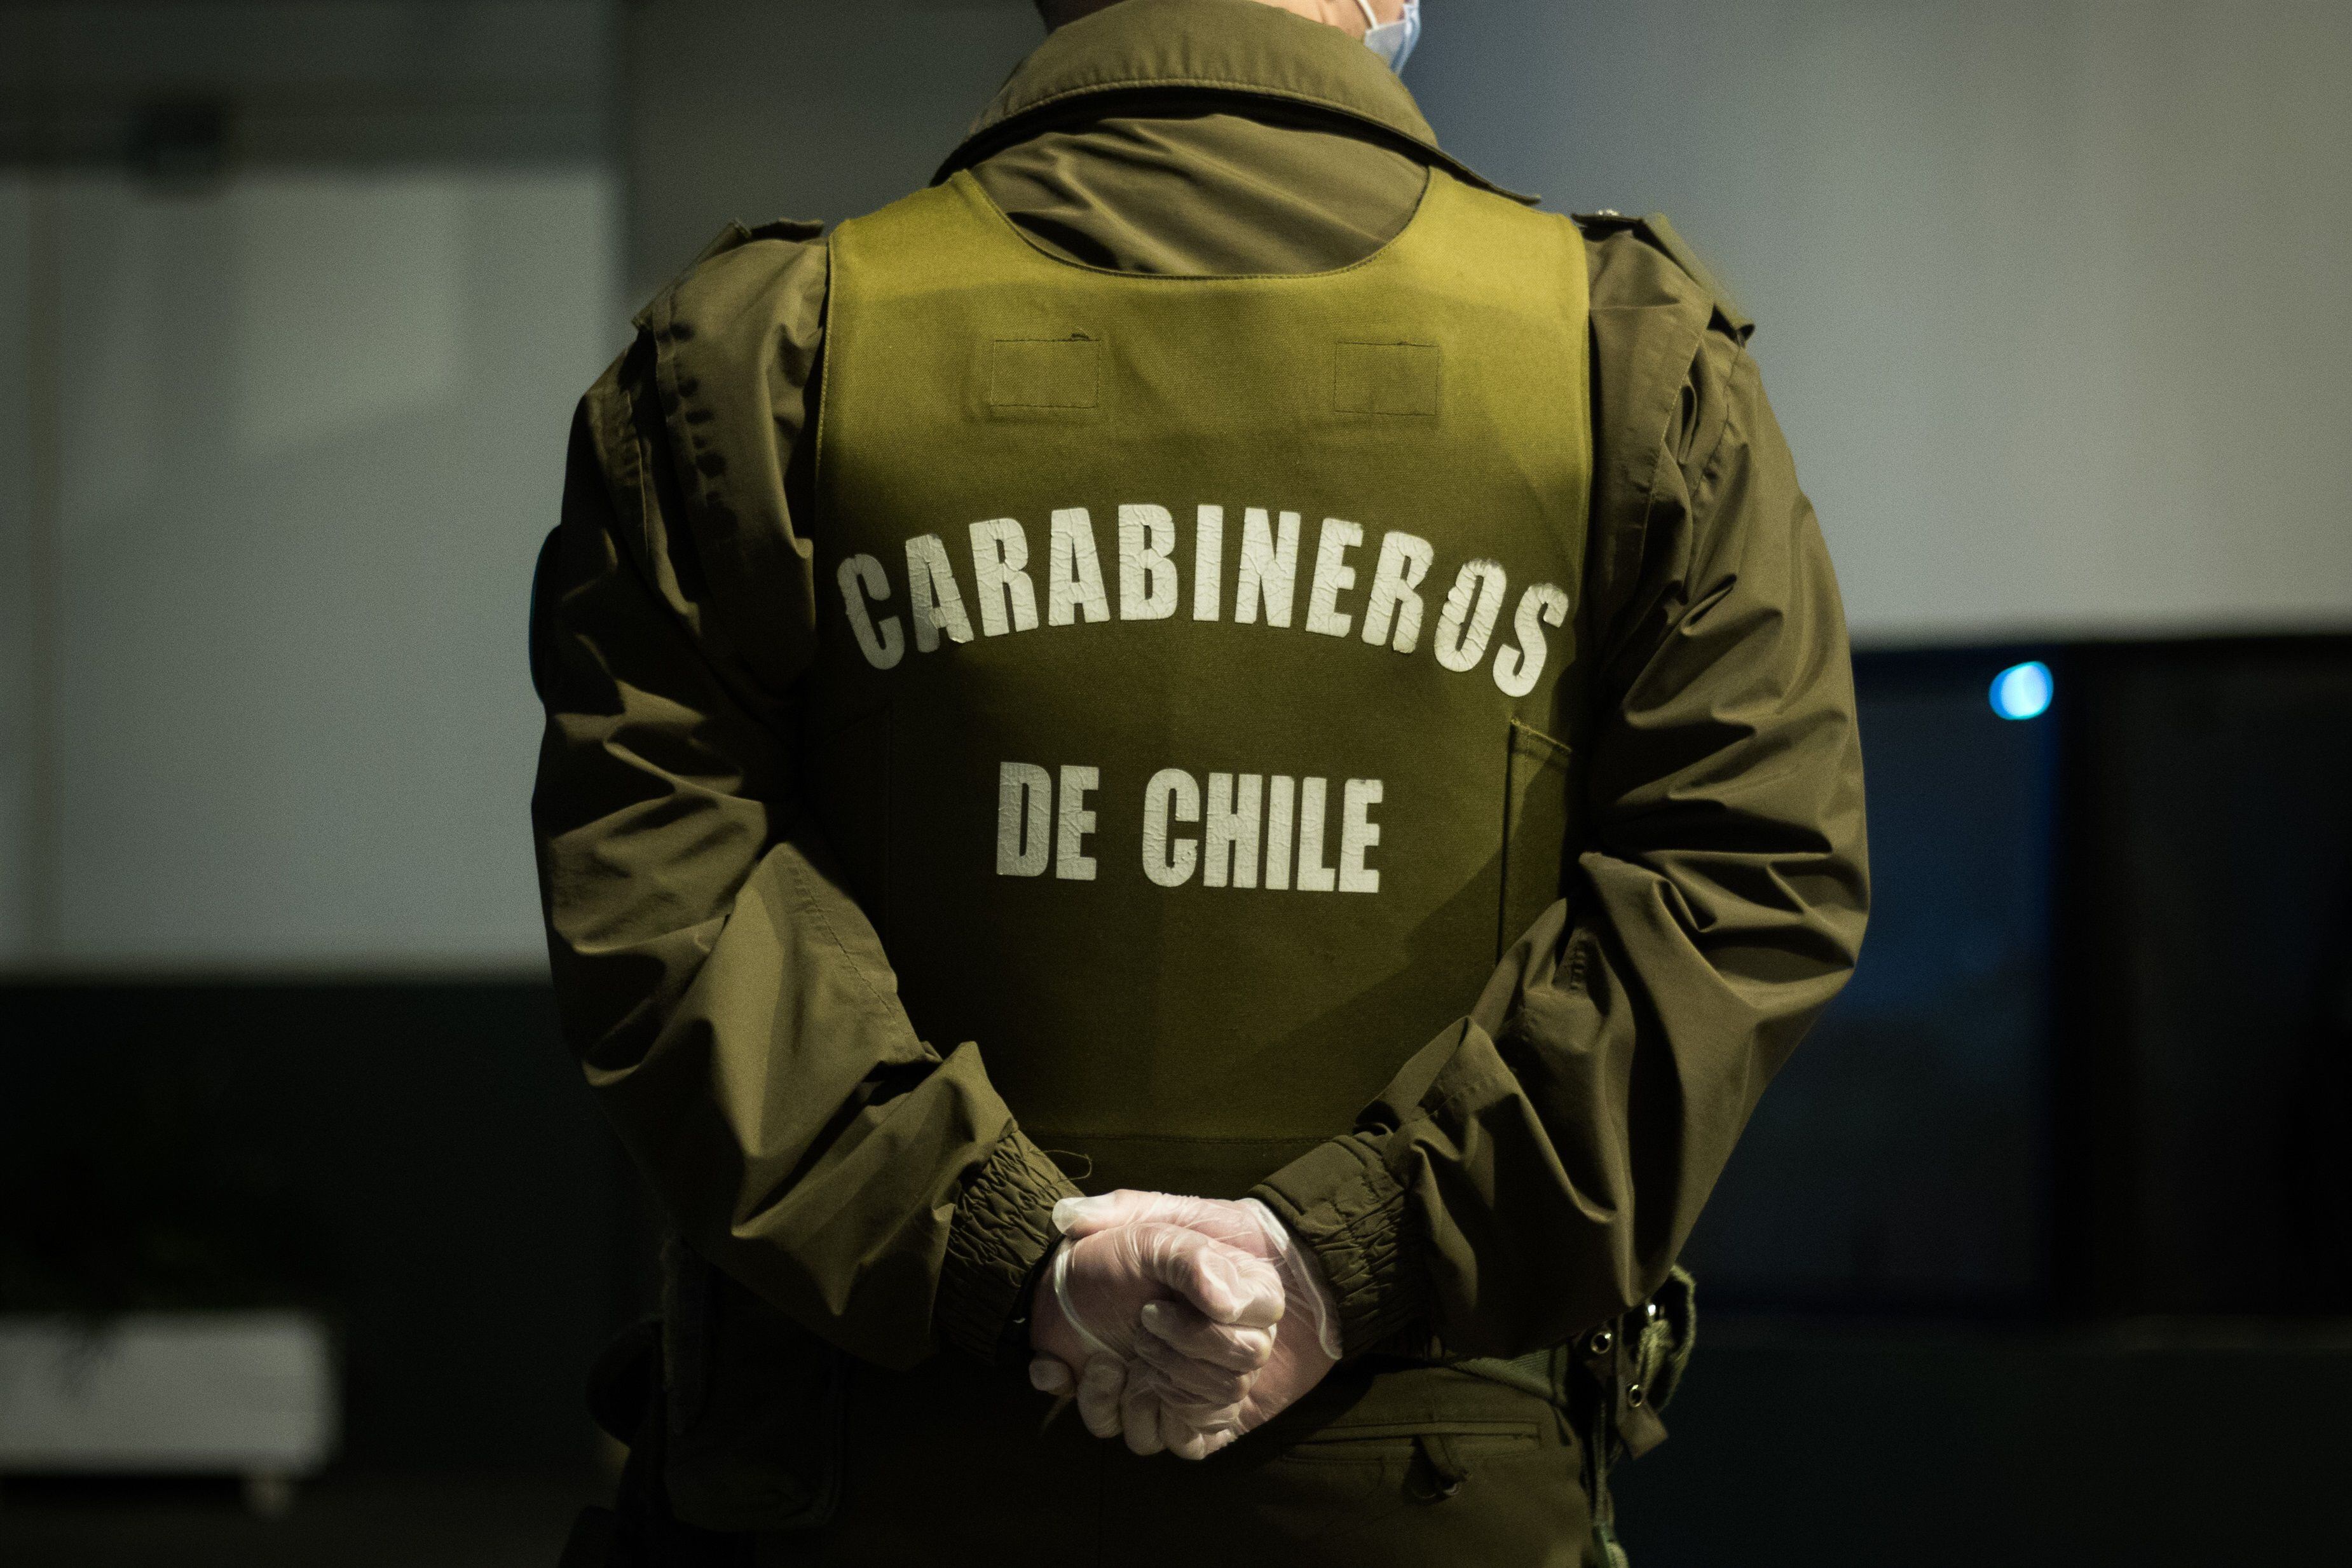 El gobernador Rodrigo Díaz consideró que el asesinato de tres carabineros en La Araucanía fue "una provocación máxima a la Policía y al Estado de Derecho de Chile” (Foto: EuropaPress)